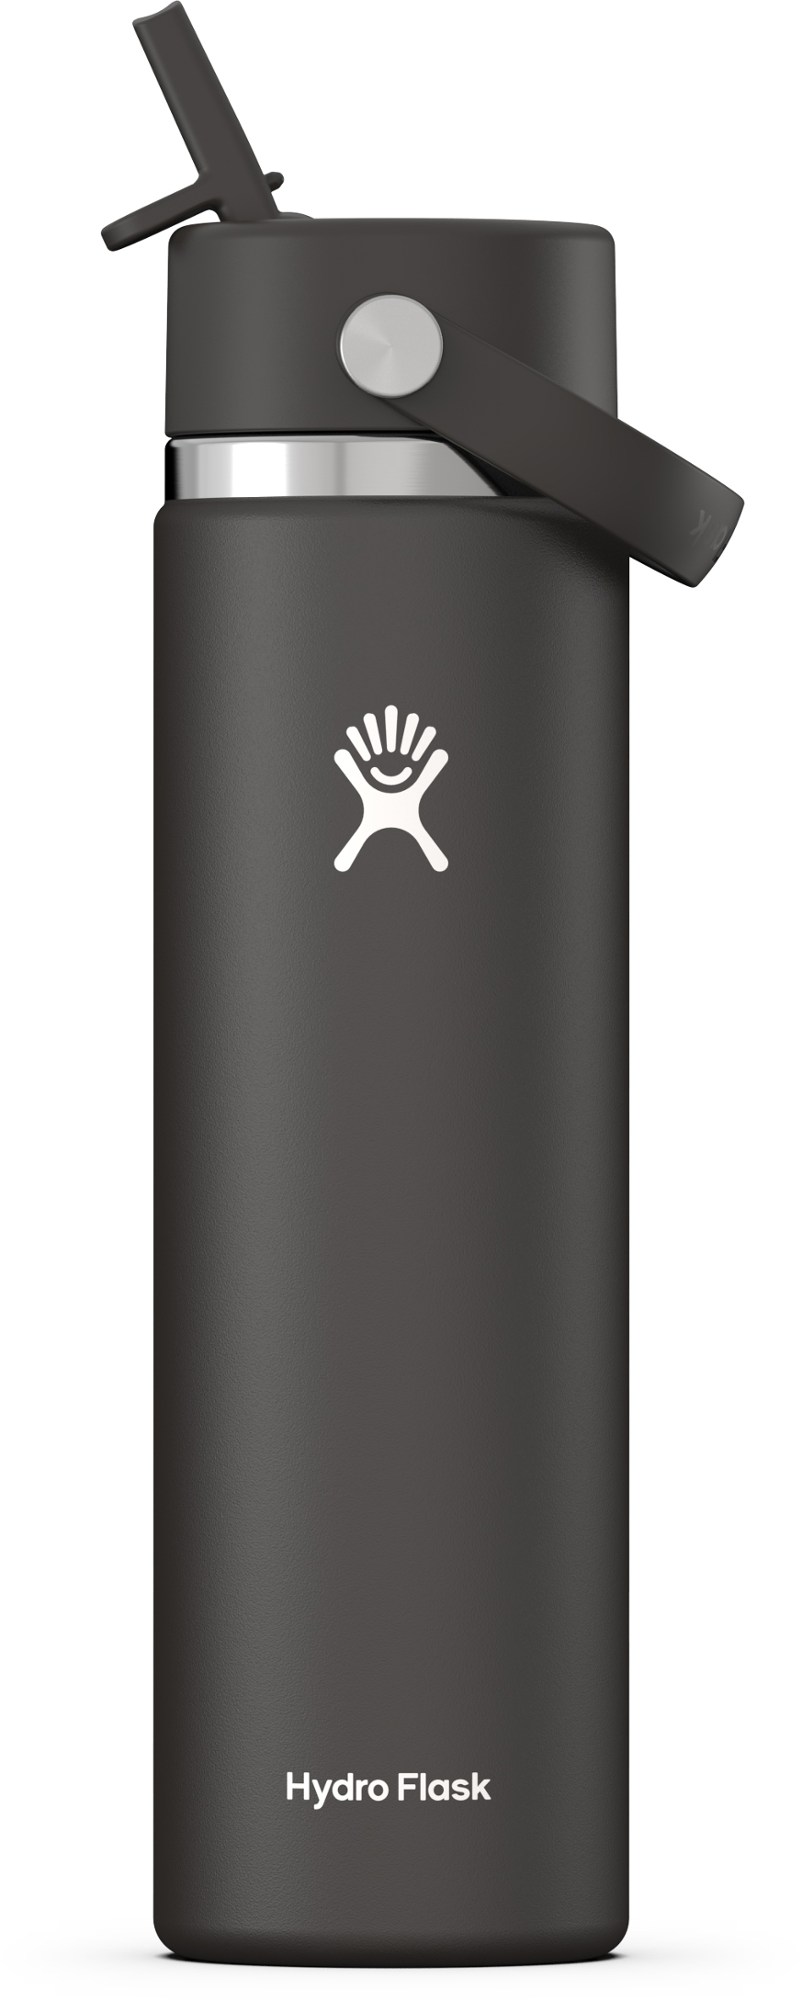 Вакуумная бутылка для воды с широким горлышком и гибкой соломенной крышкой — 24 эт. унция Hydro Flask, черный изолированный ланч бокс для молодежи hydro flask